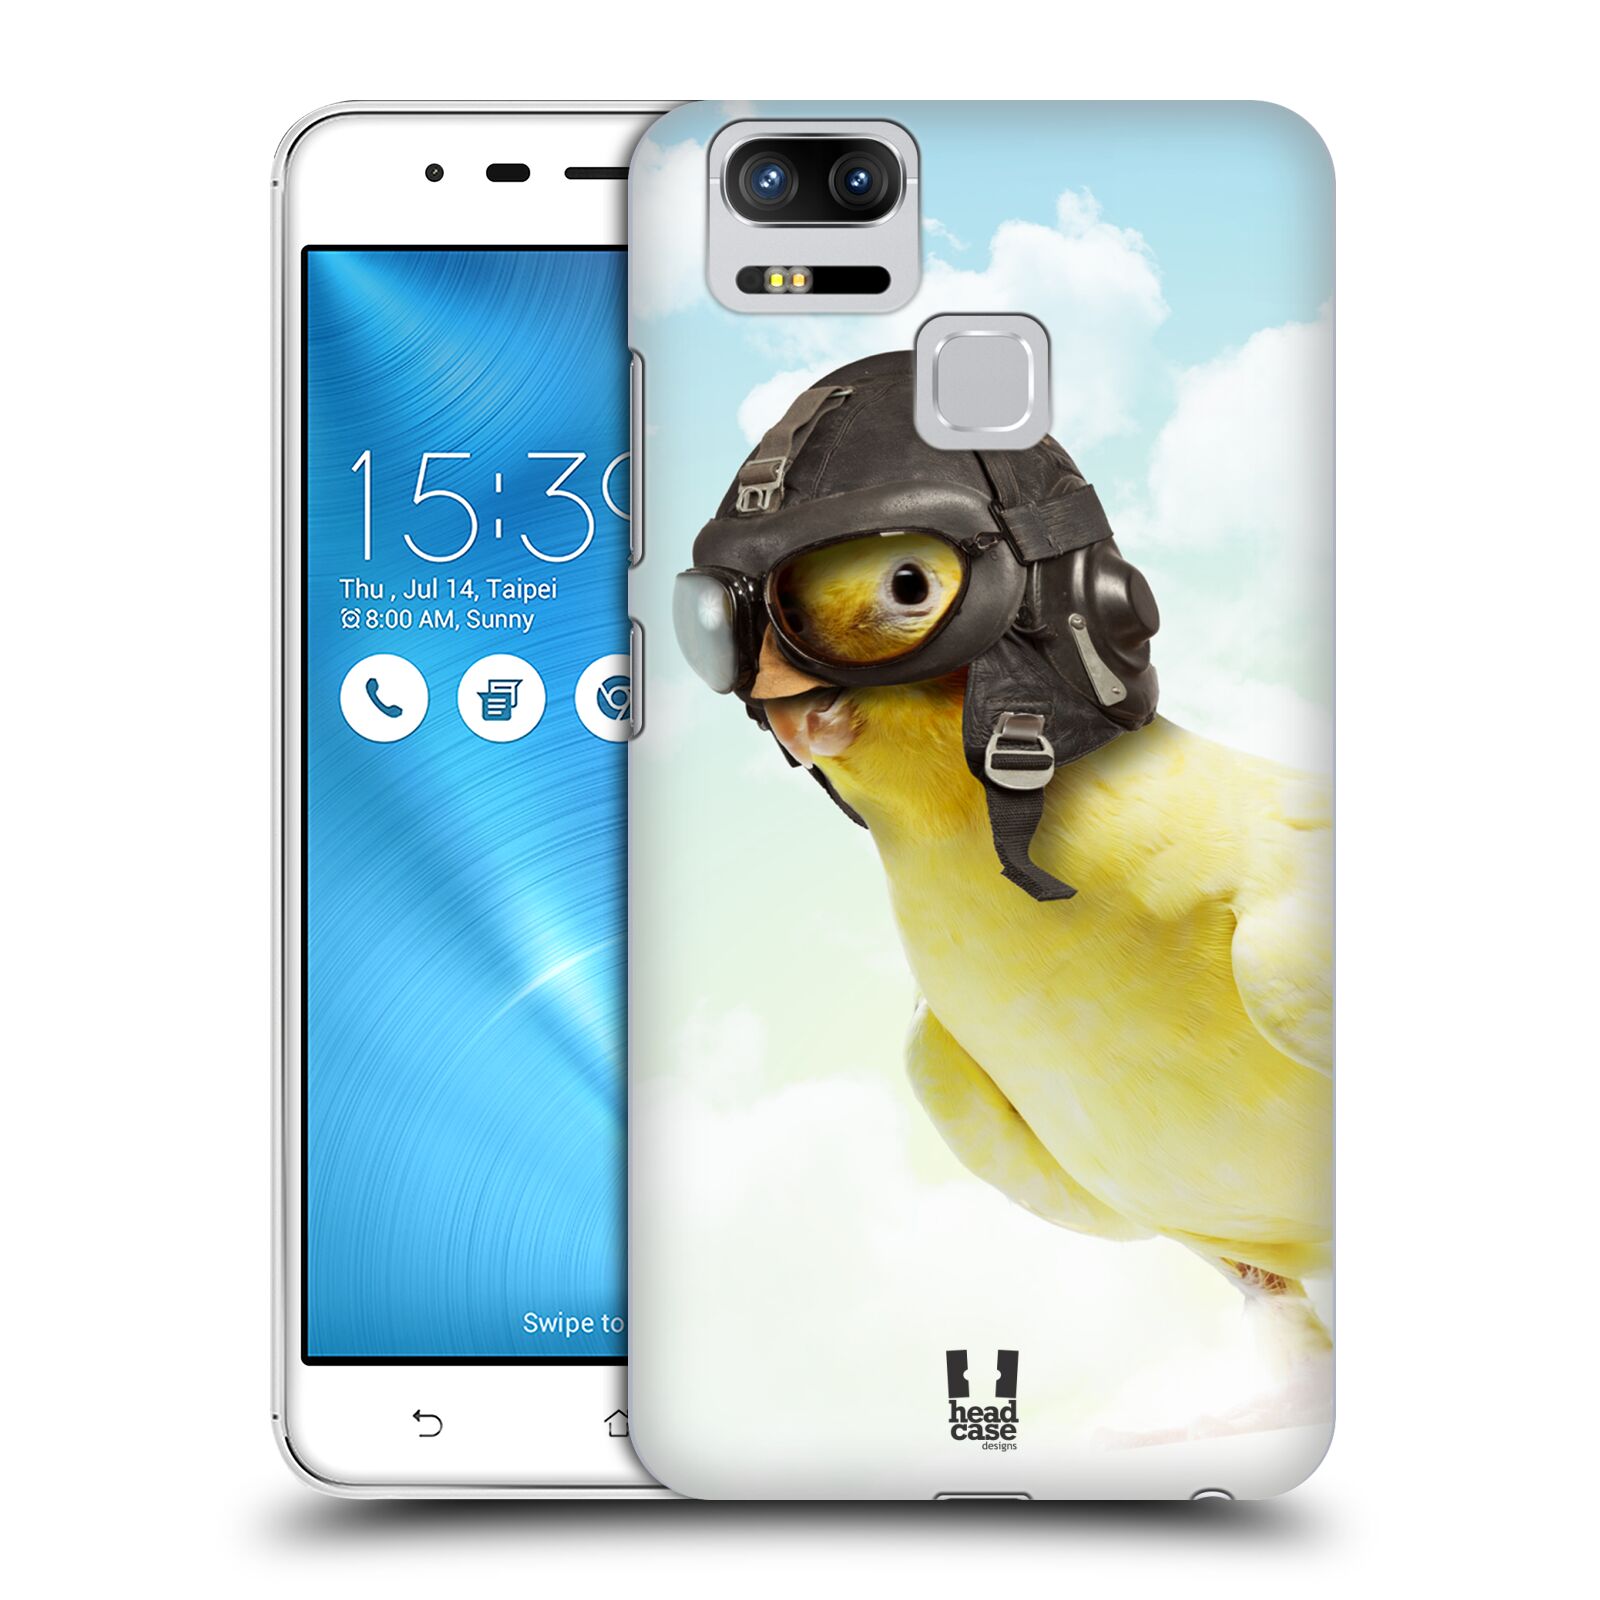 HEAD CASE plastový obal na mobil Asus Zenfone 3 Zoom ZE553KL vzor Legrační zvířátka ptáček letec